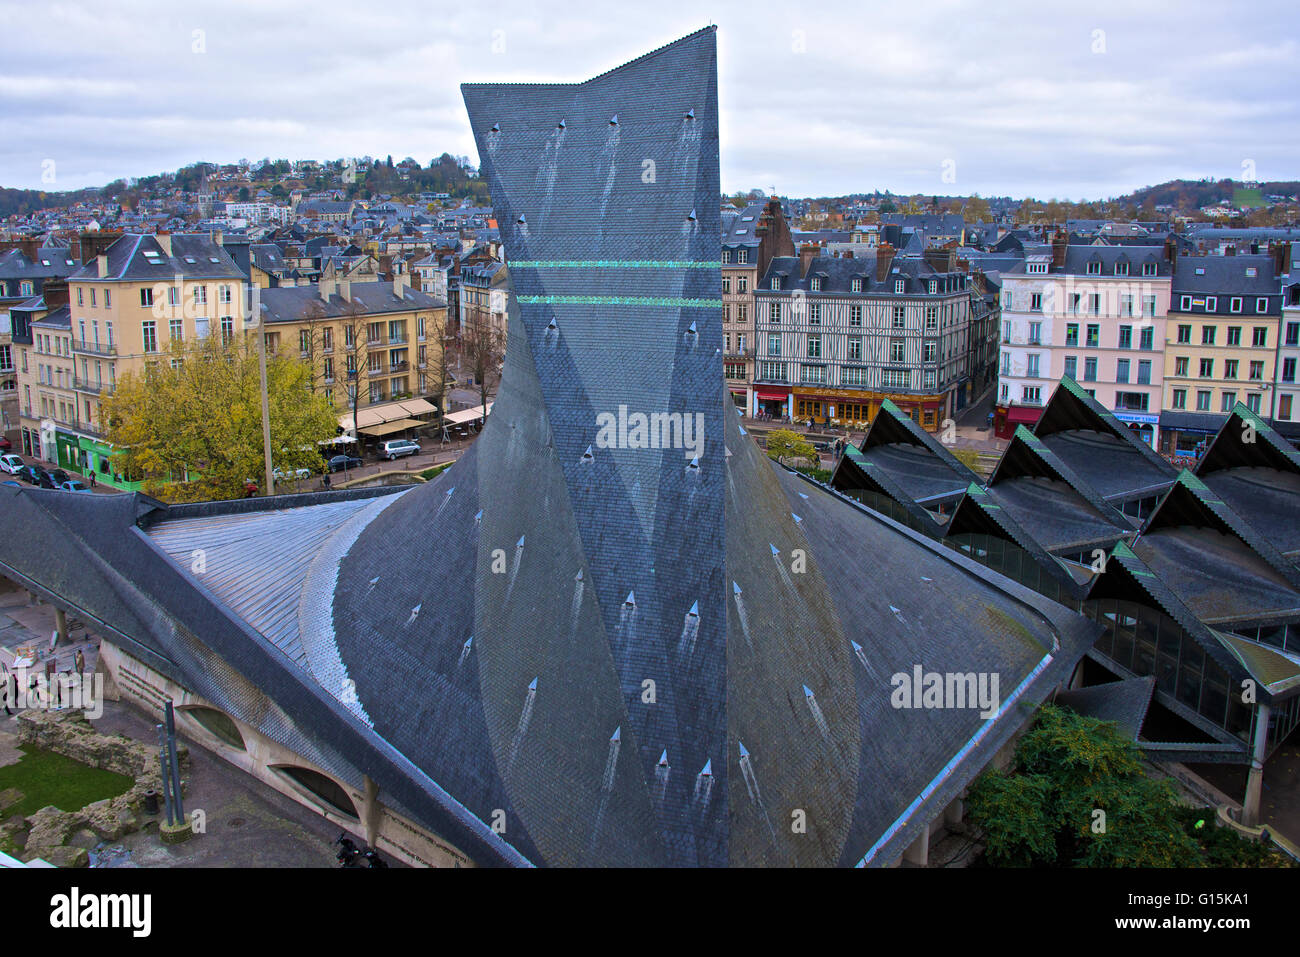 Giovanna d'arco del tetto della chiesa e antico mercato, Rouen, in Normandia, Francia, Europa Foto Stock